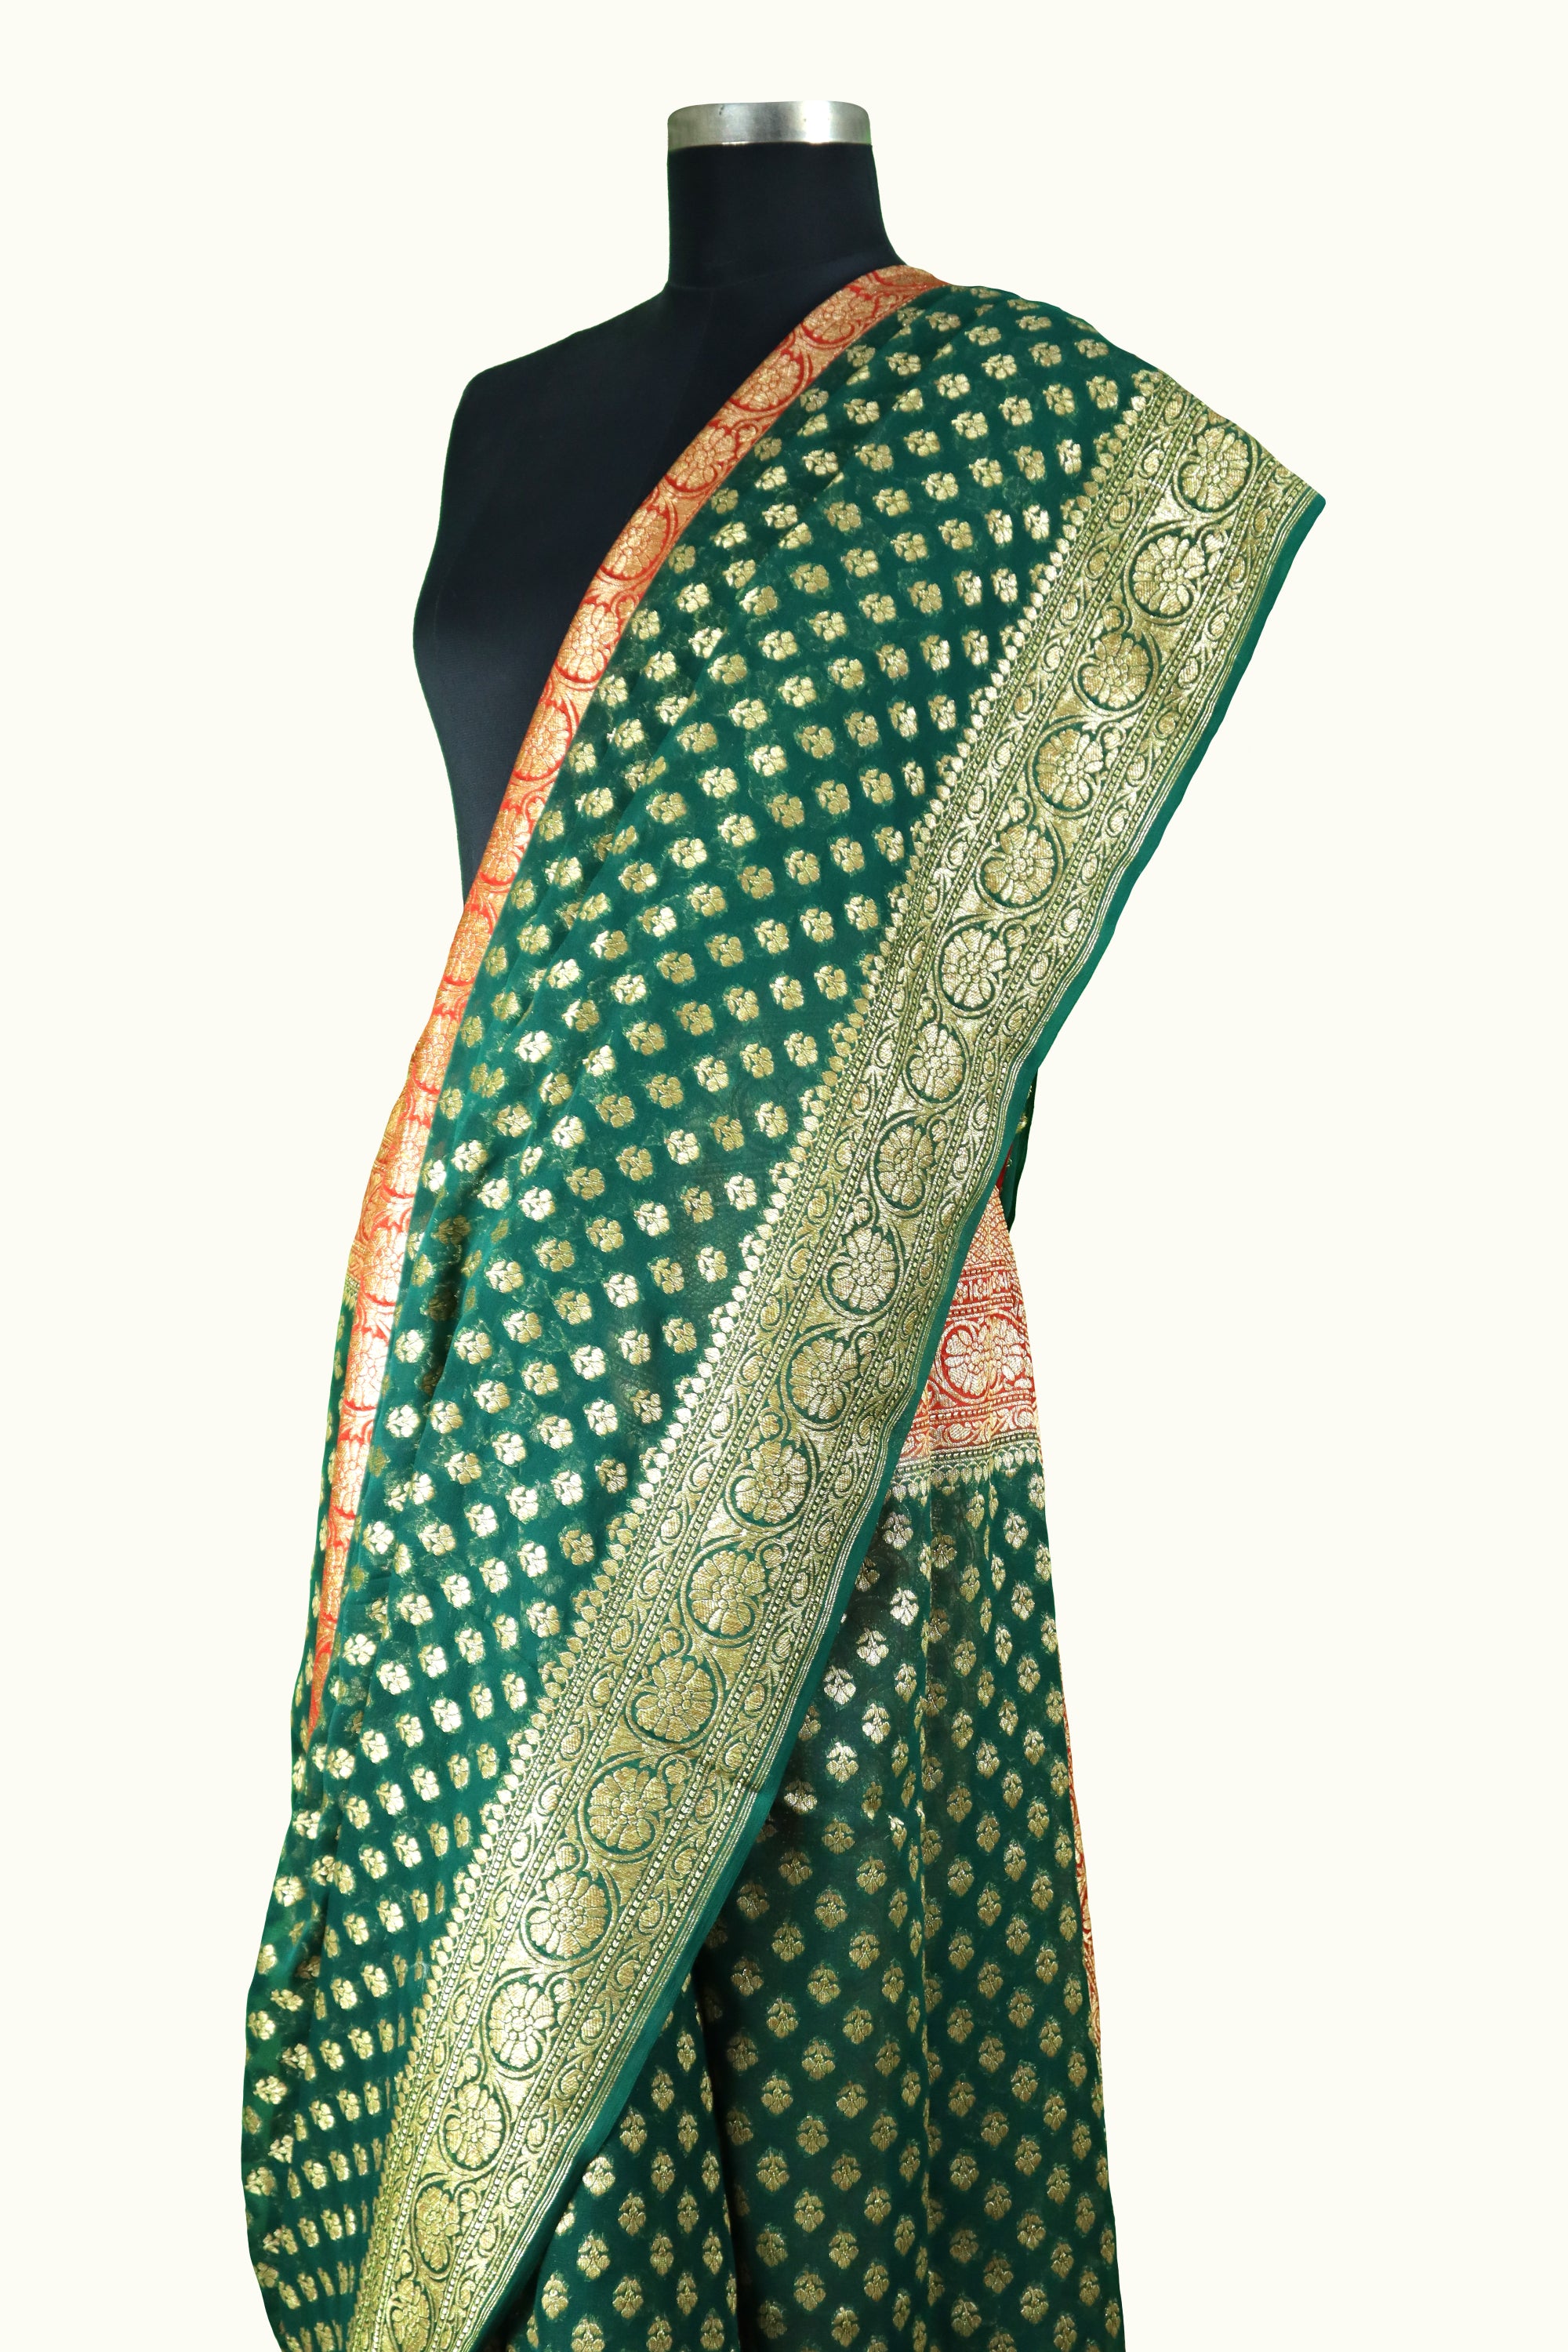 Banarasi Pure Georgette Saree in Teal Green : SNEA3092